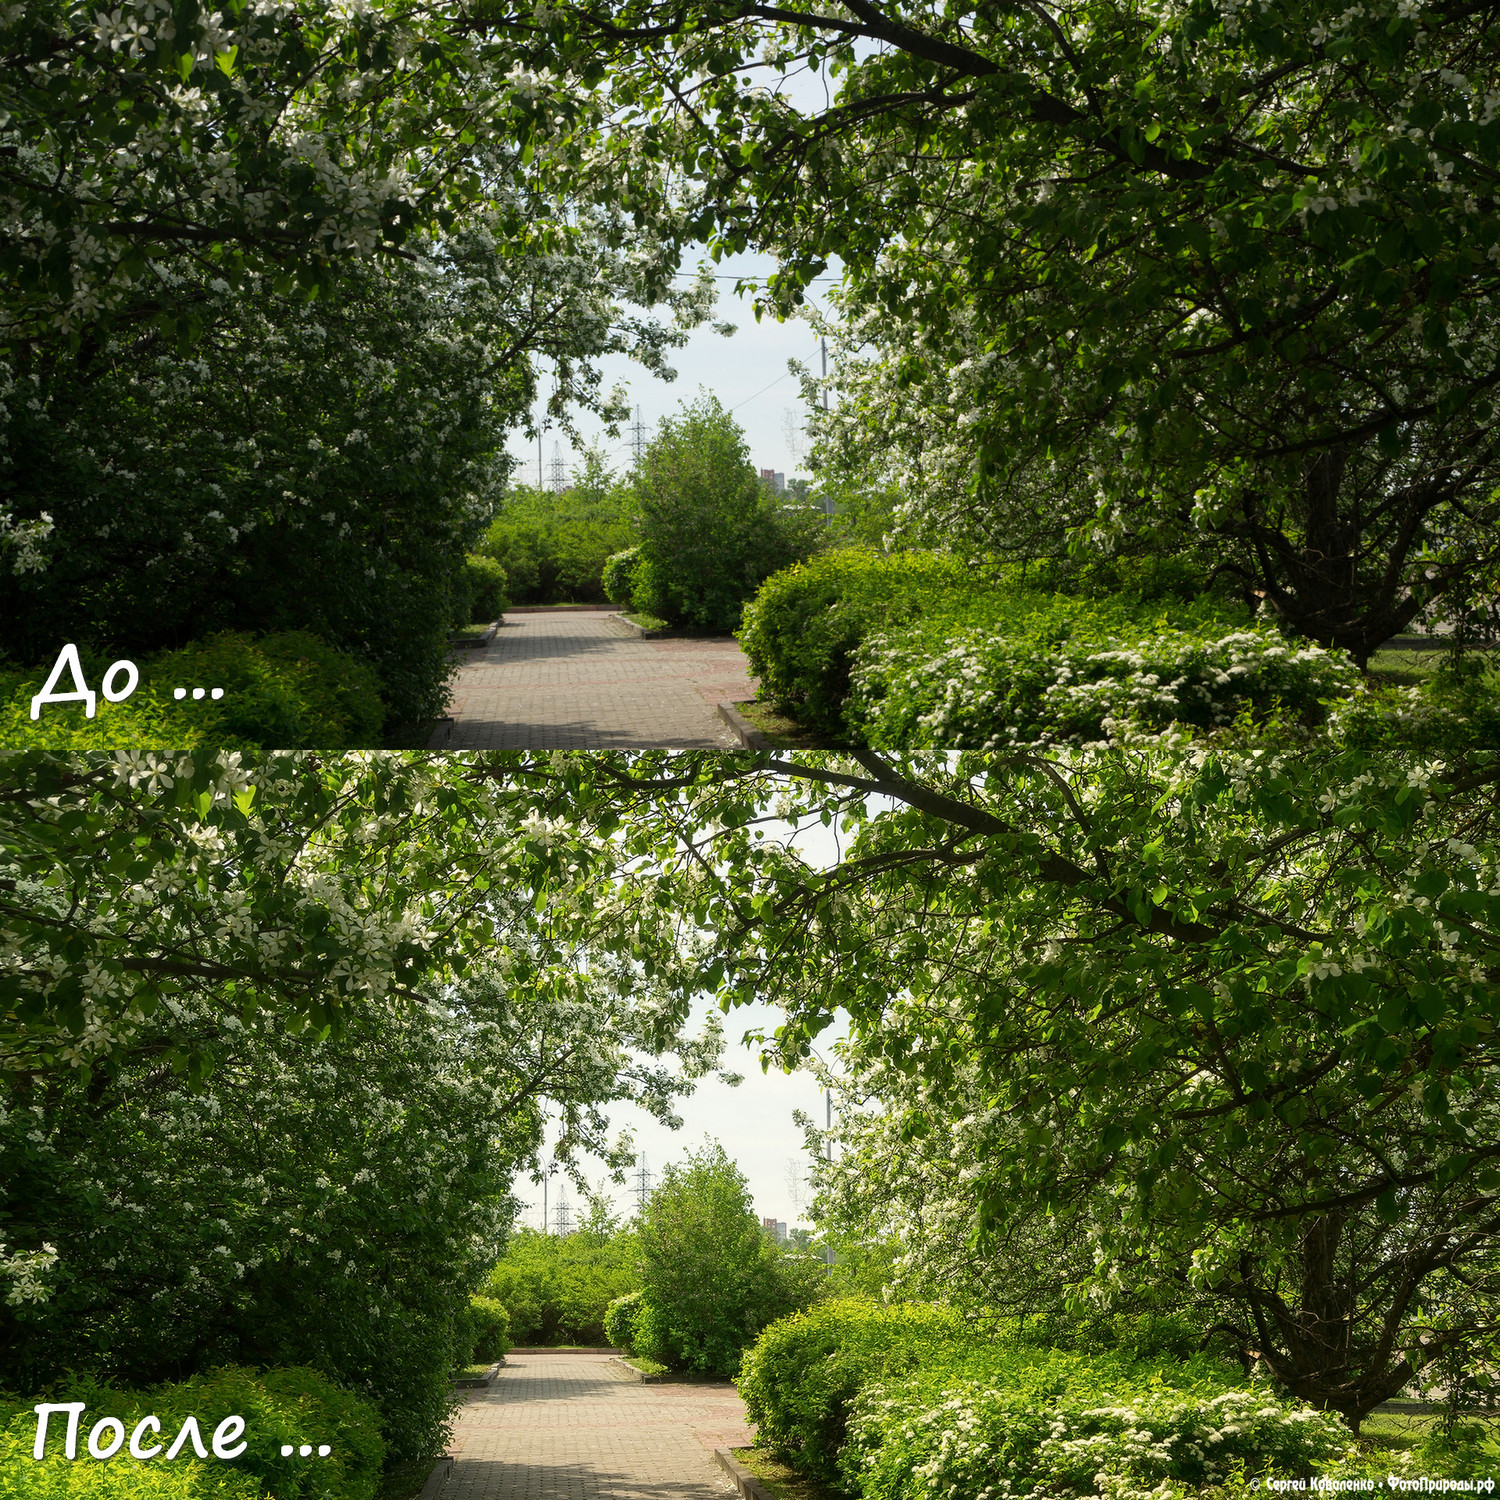 До-После: Весенняя природа - фото №170 — Сравнение | ФотоПрироды.рф